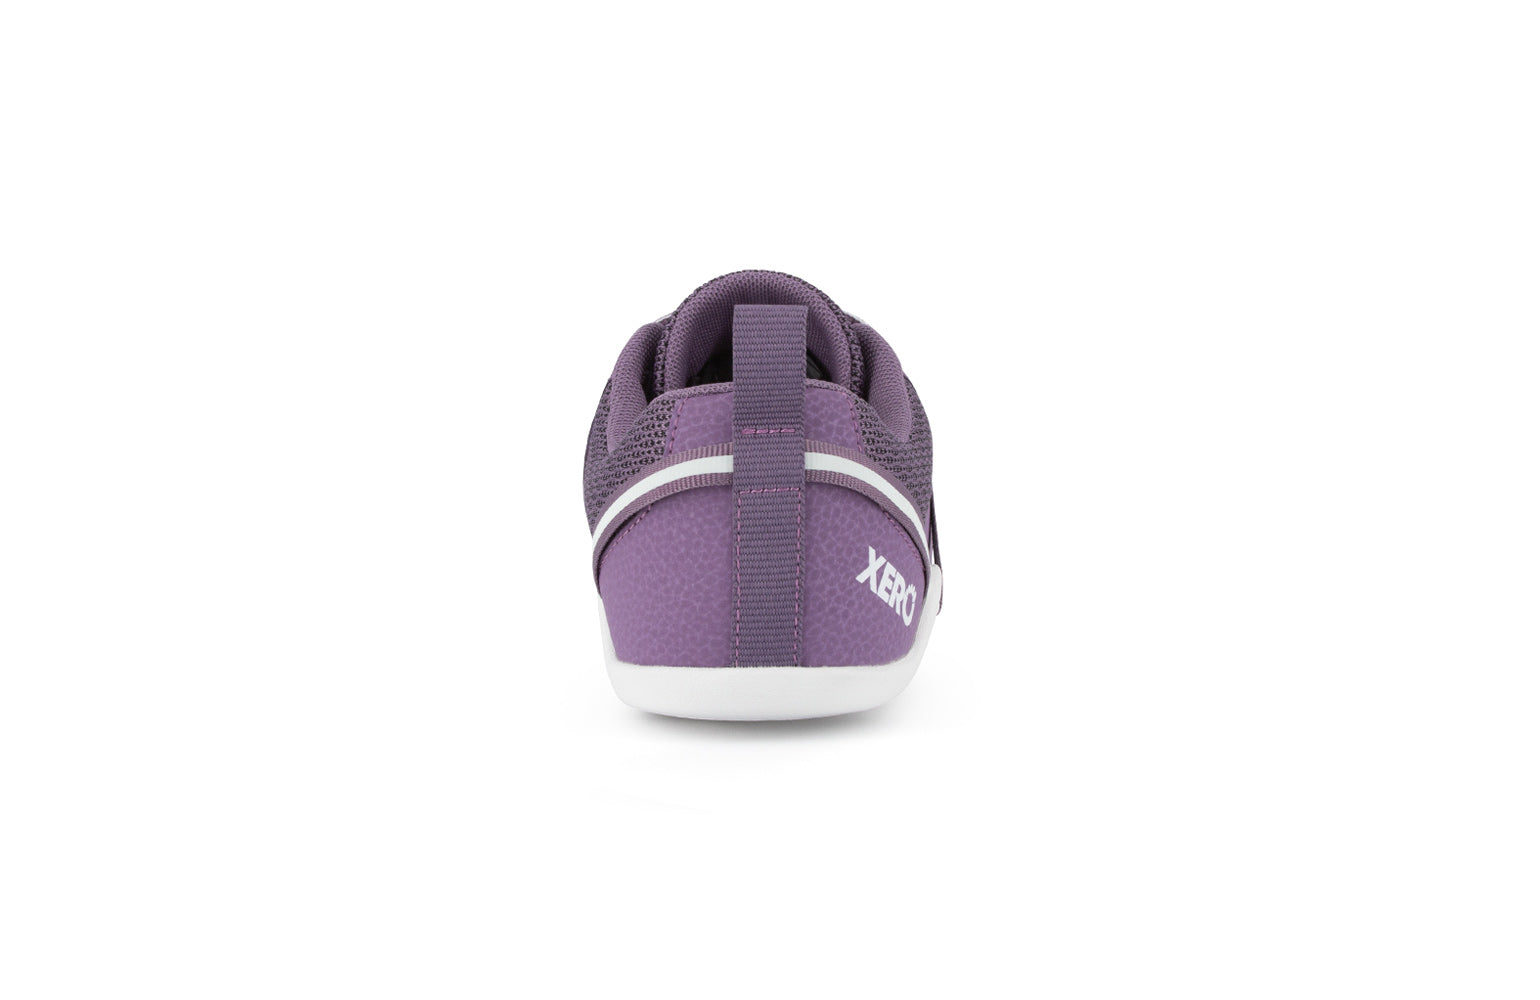 Xero Shoes Prio Kids barfods træningssko/sneakers til børn i farven violet, bagfra